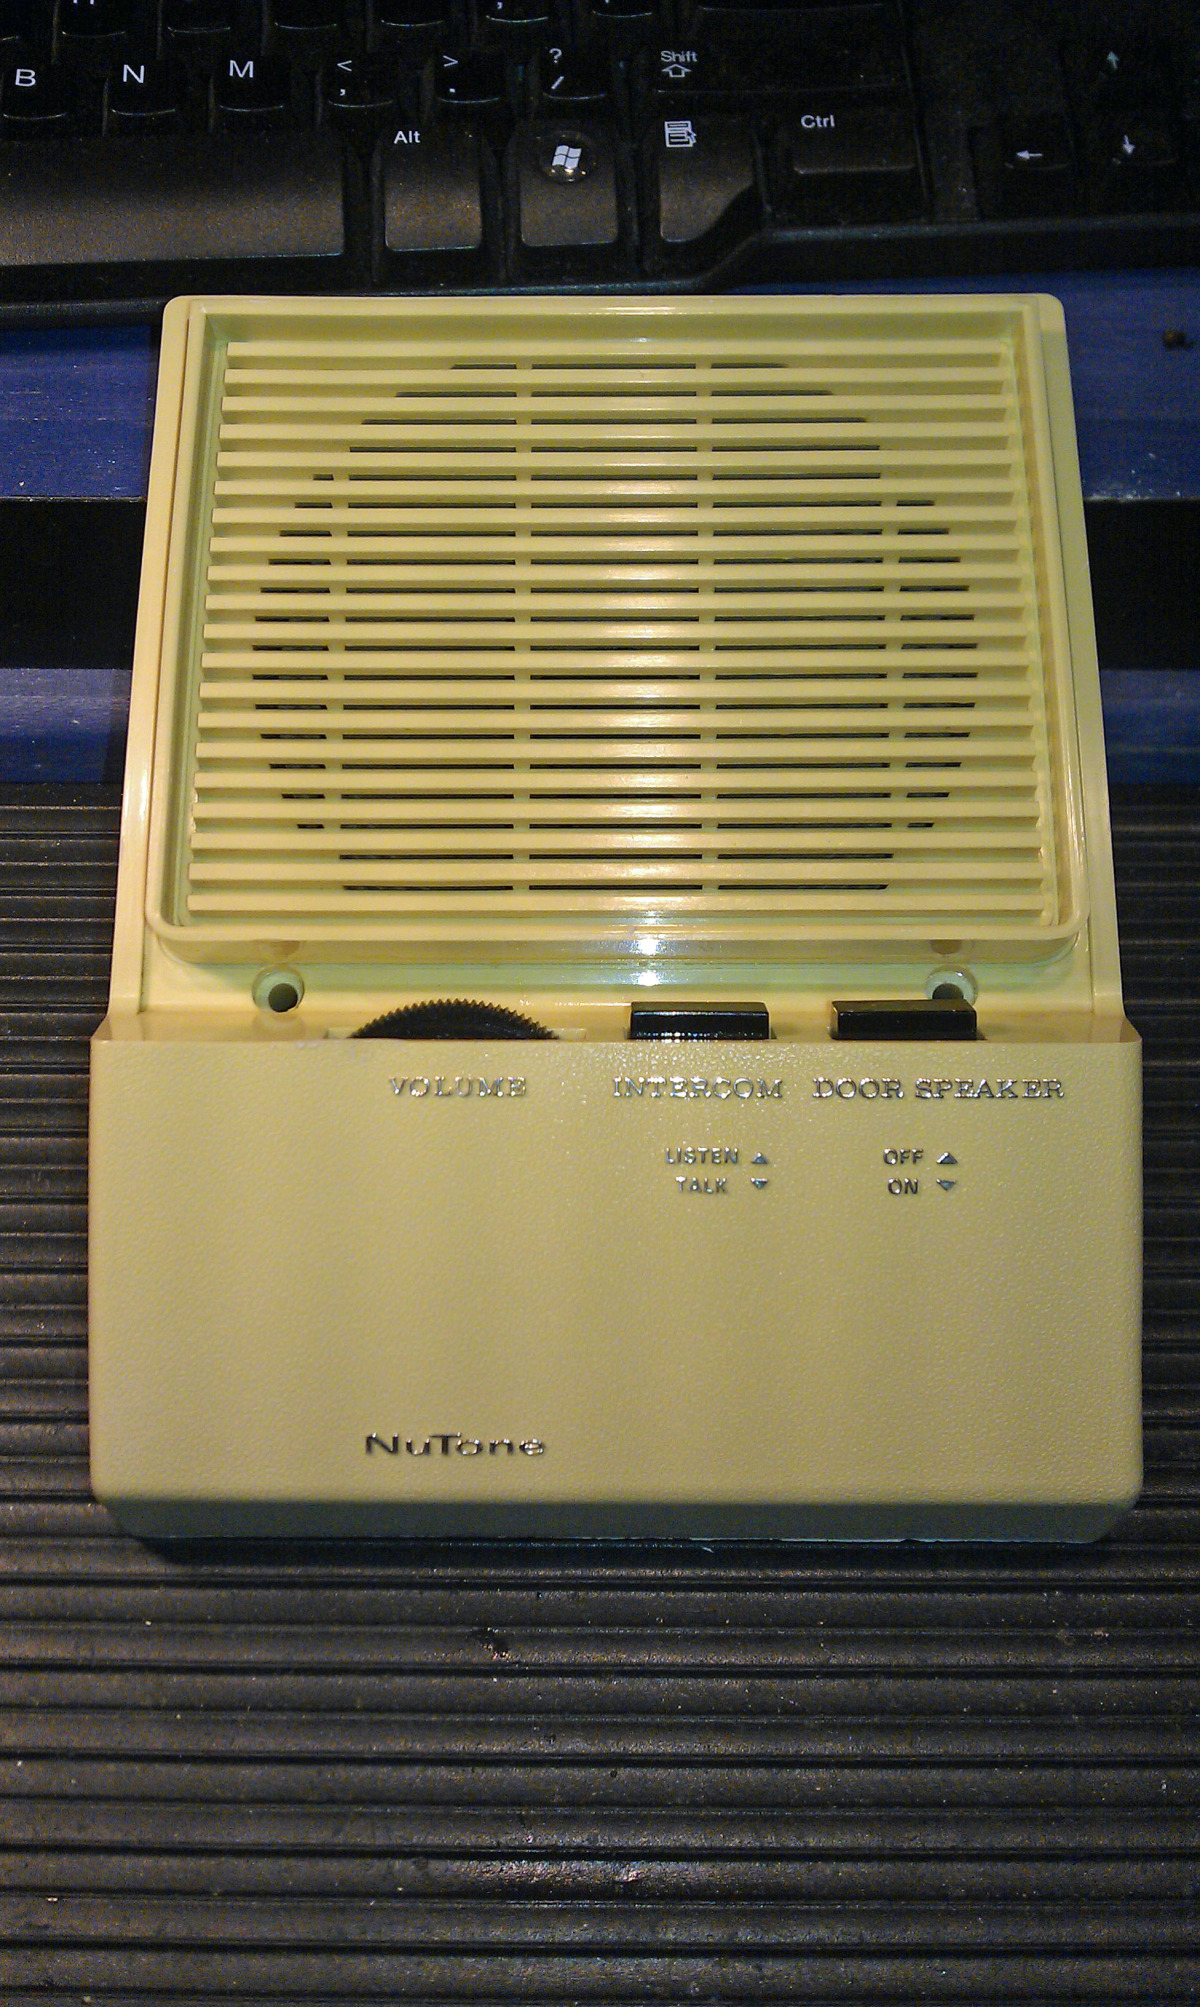 nutone model 2550 speaker.jpg